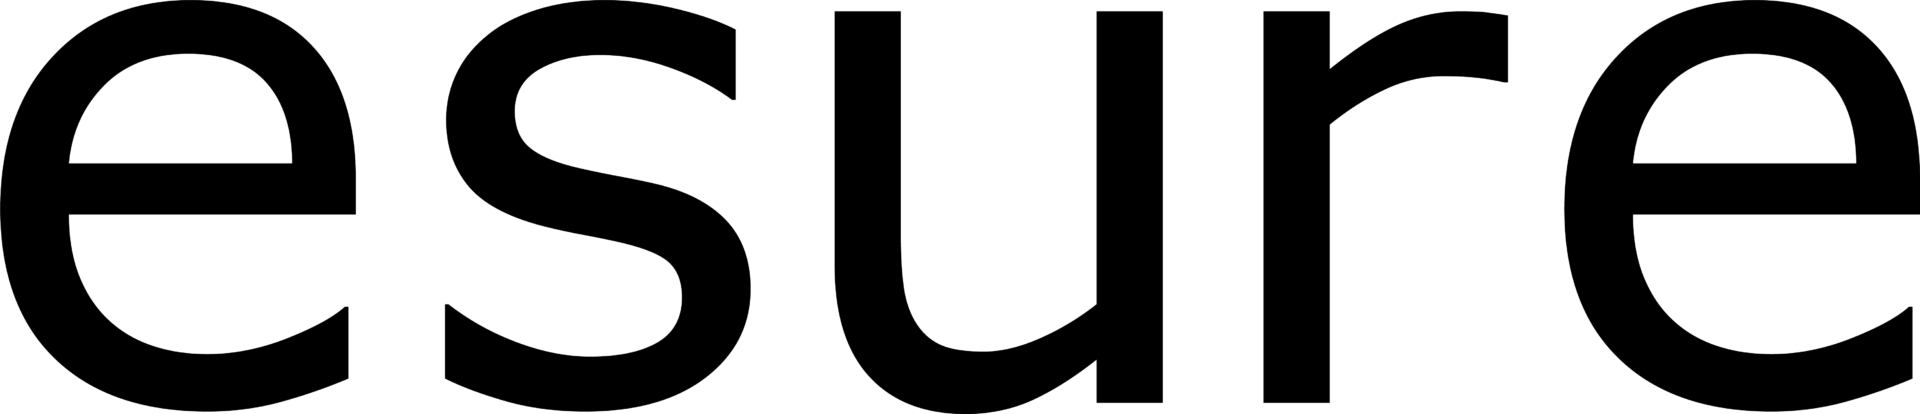 ESure logo in black